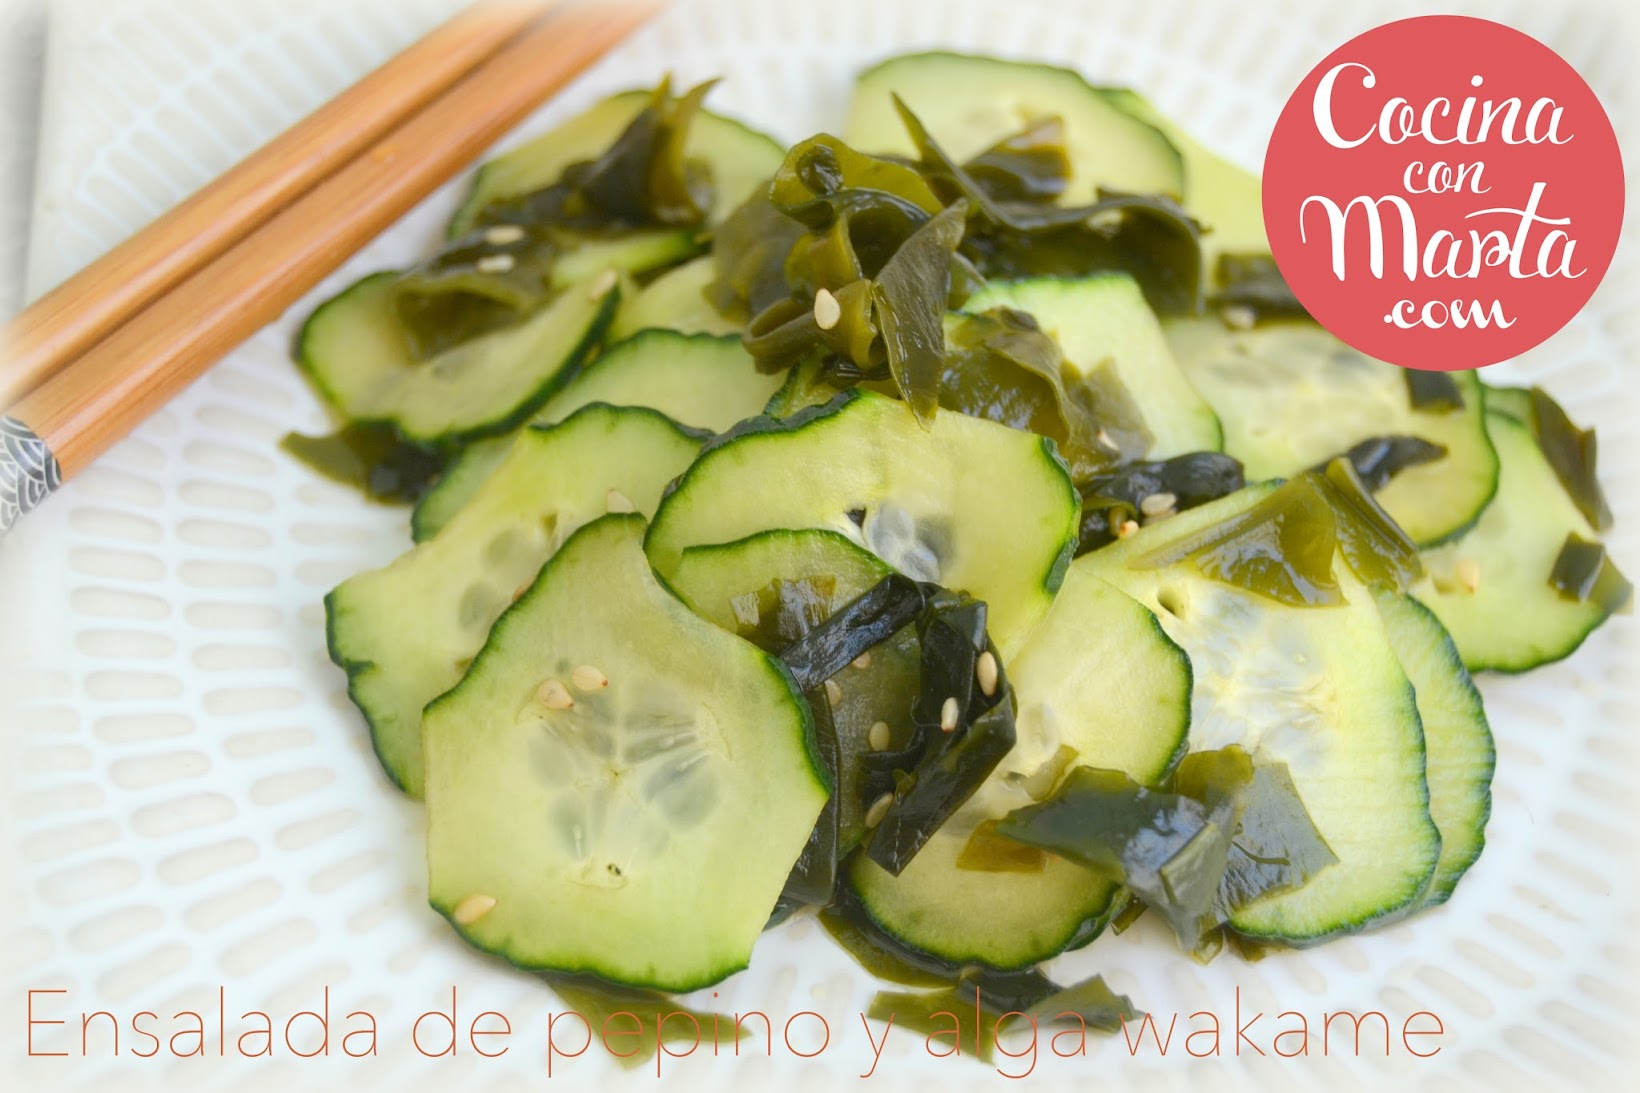 Ensalada Casera de pepino y algas wakame, receta japonesa. Fácil, sana, rápida. Cocina con Marta